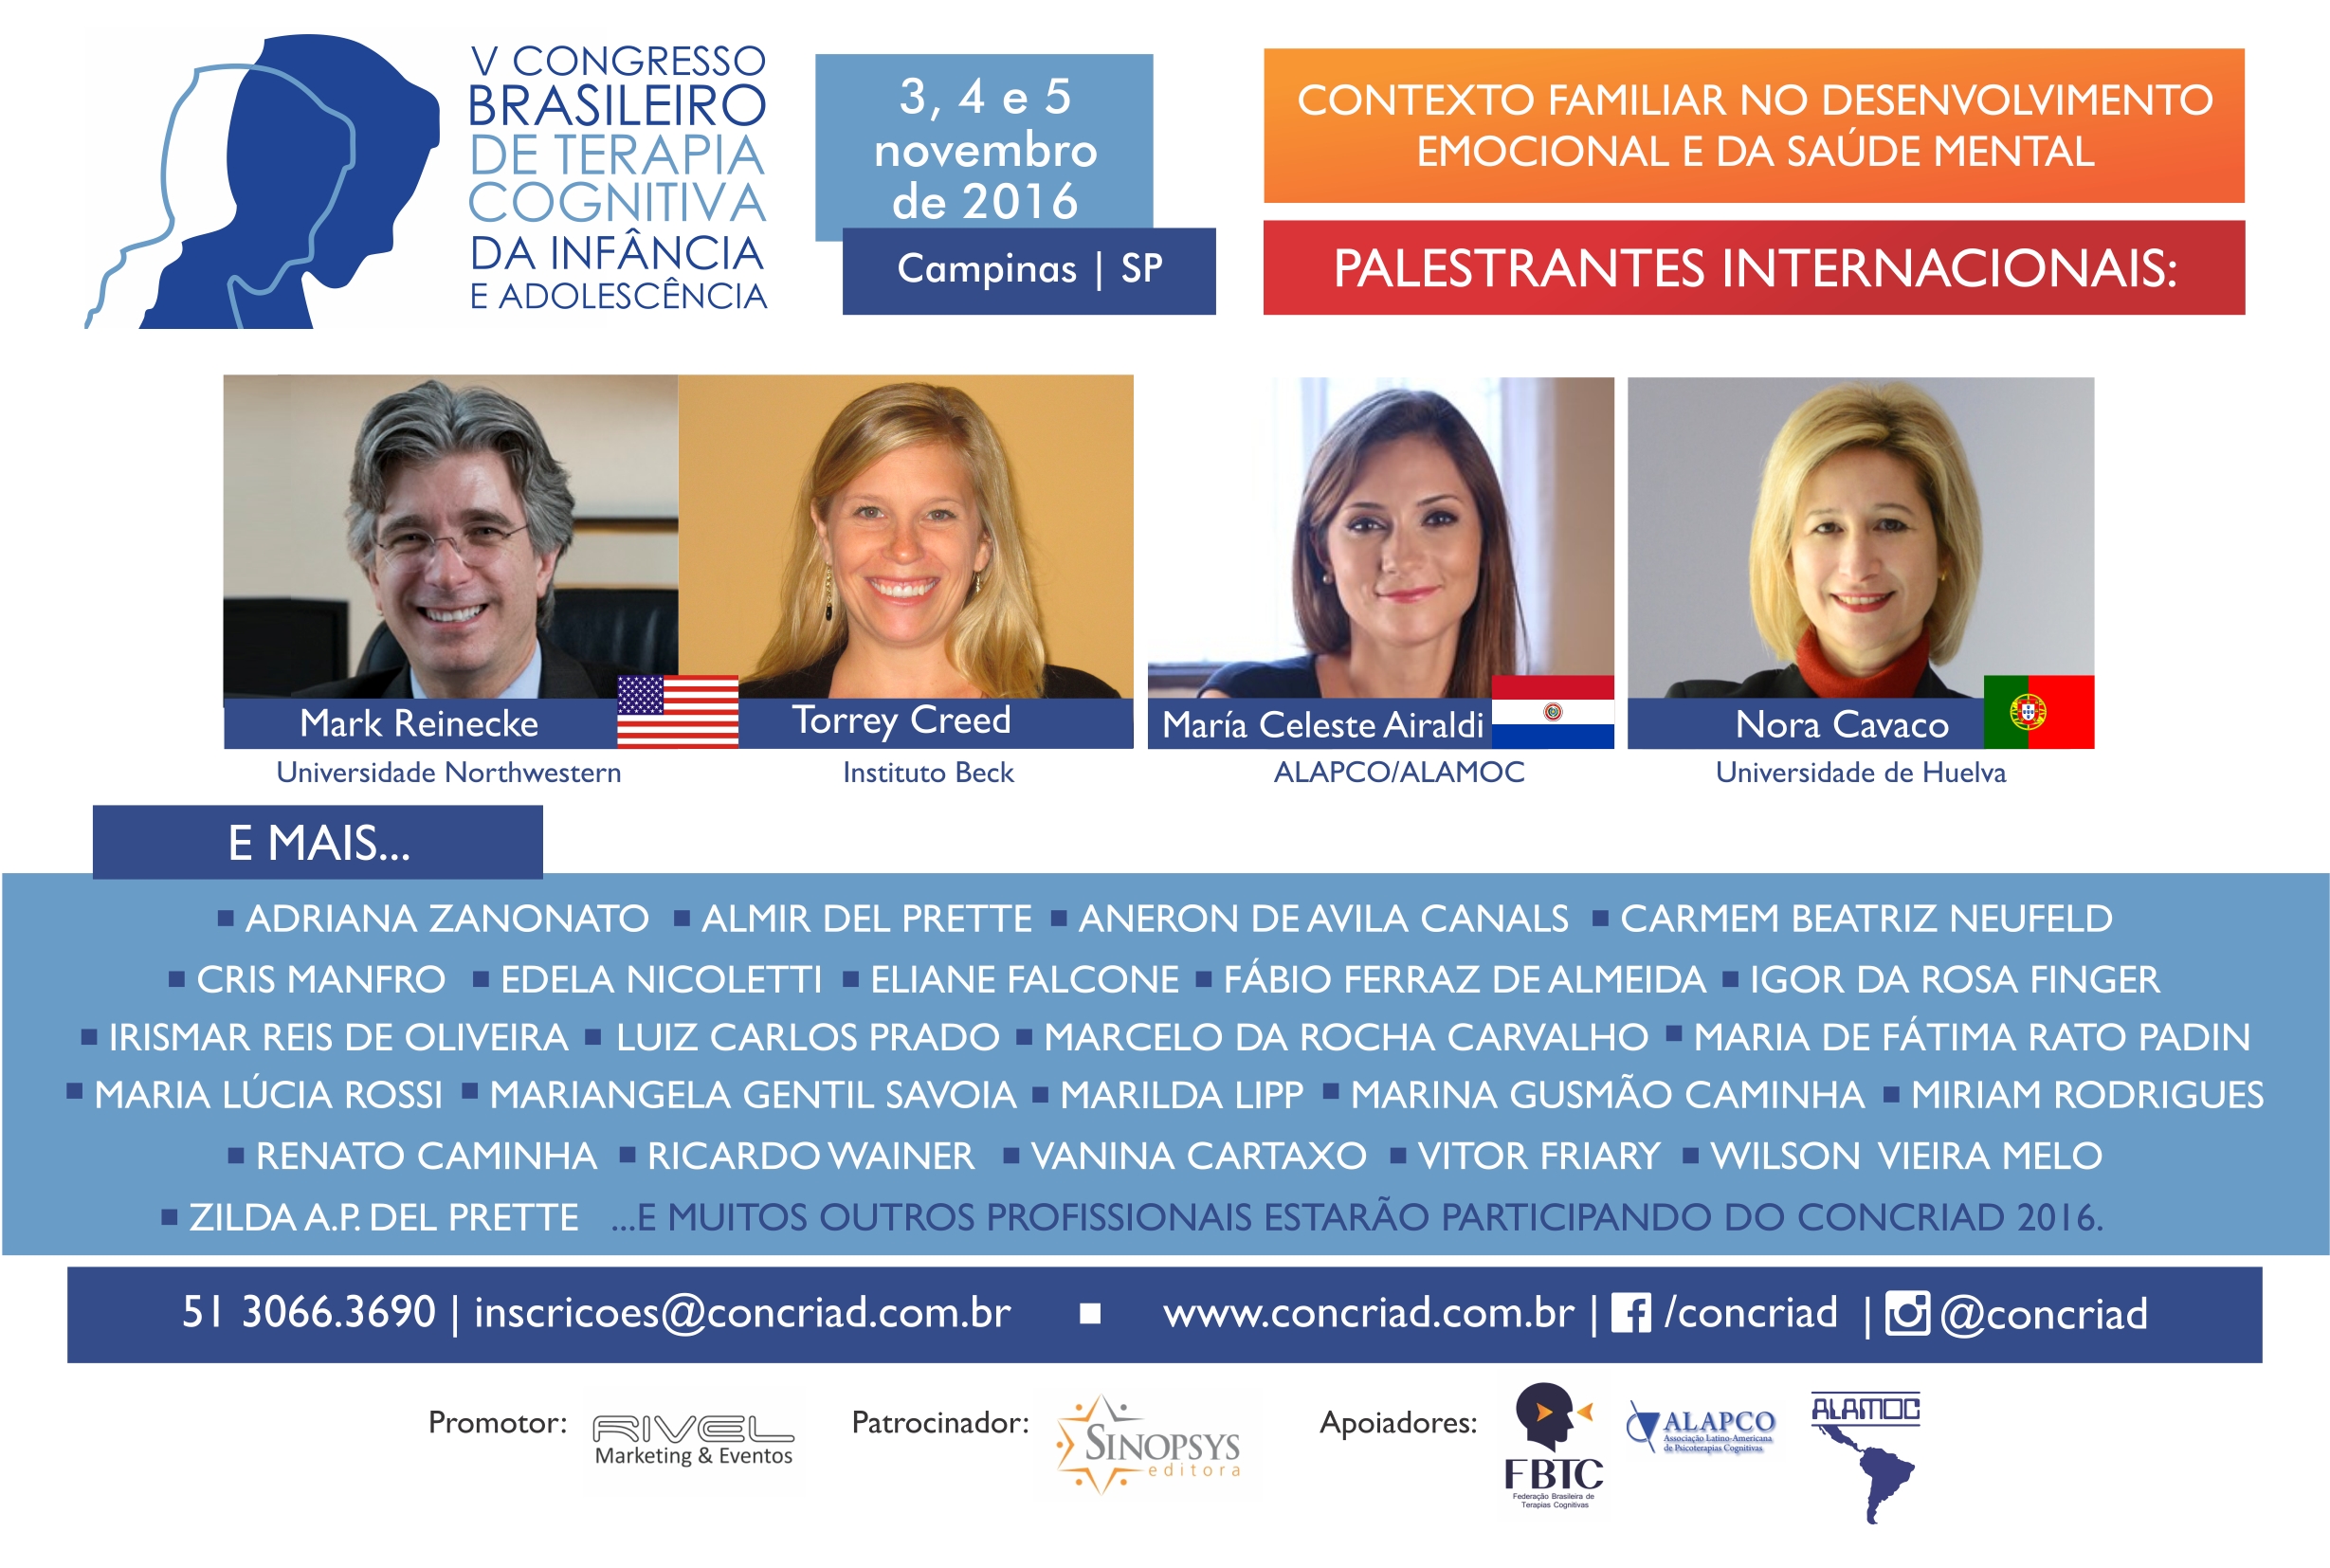 CONCRIAD 2016 - V Congresso Brasileiro de Terapia Cognitiva da Infância e Adolescência